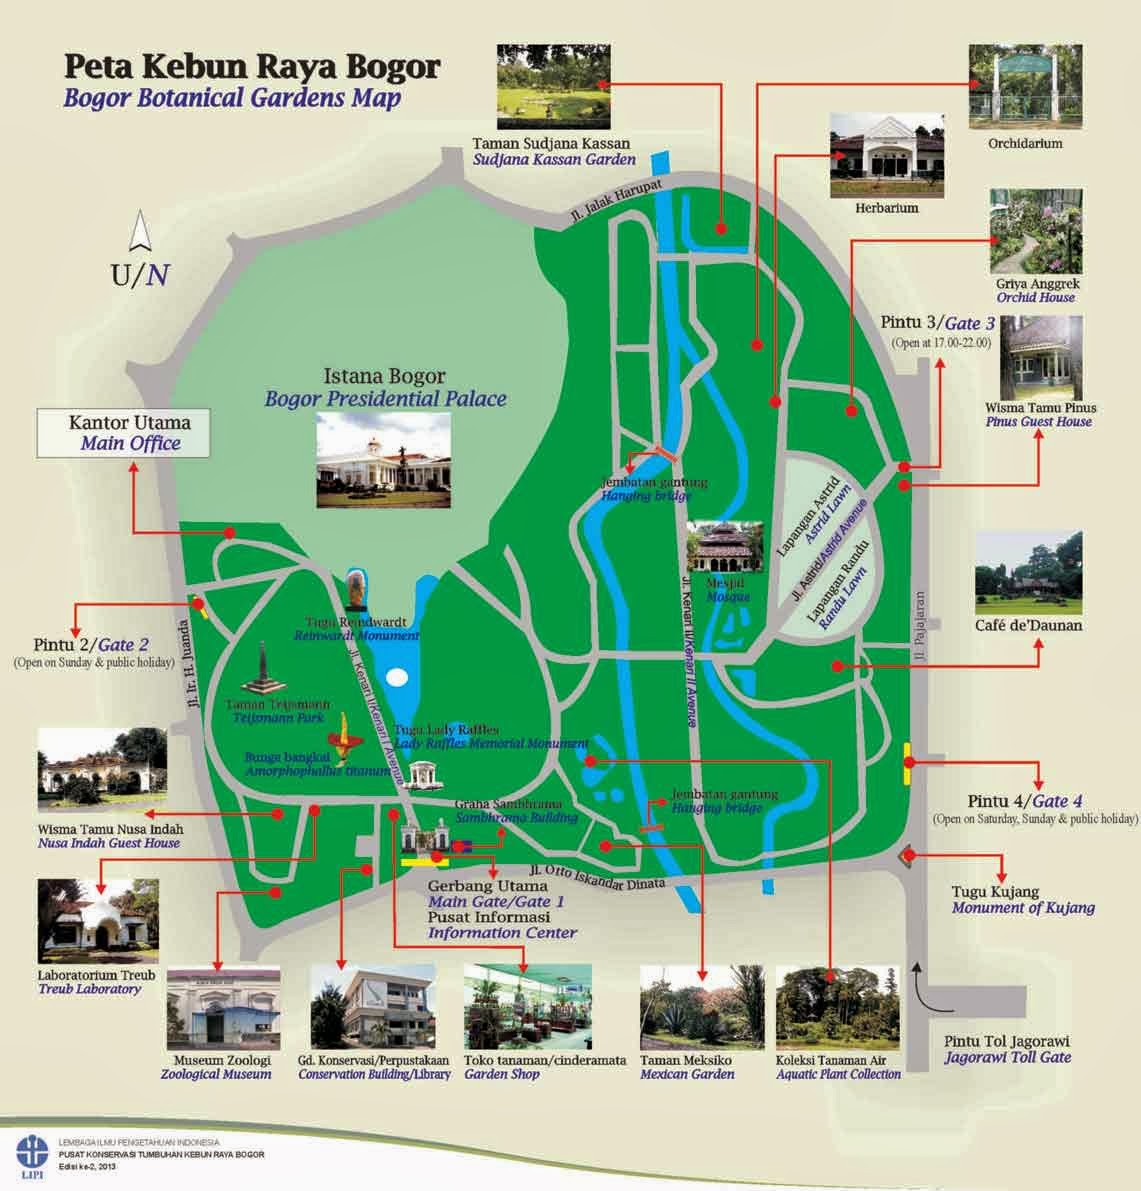 Halaman Bogor: Peta Kebun Raya Bogor